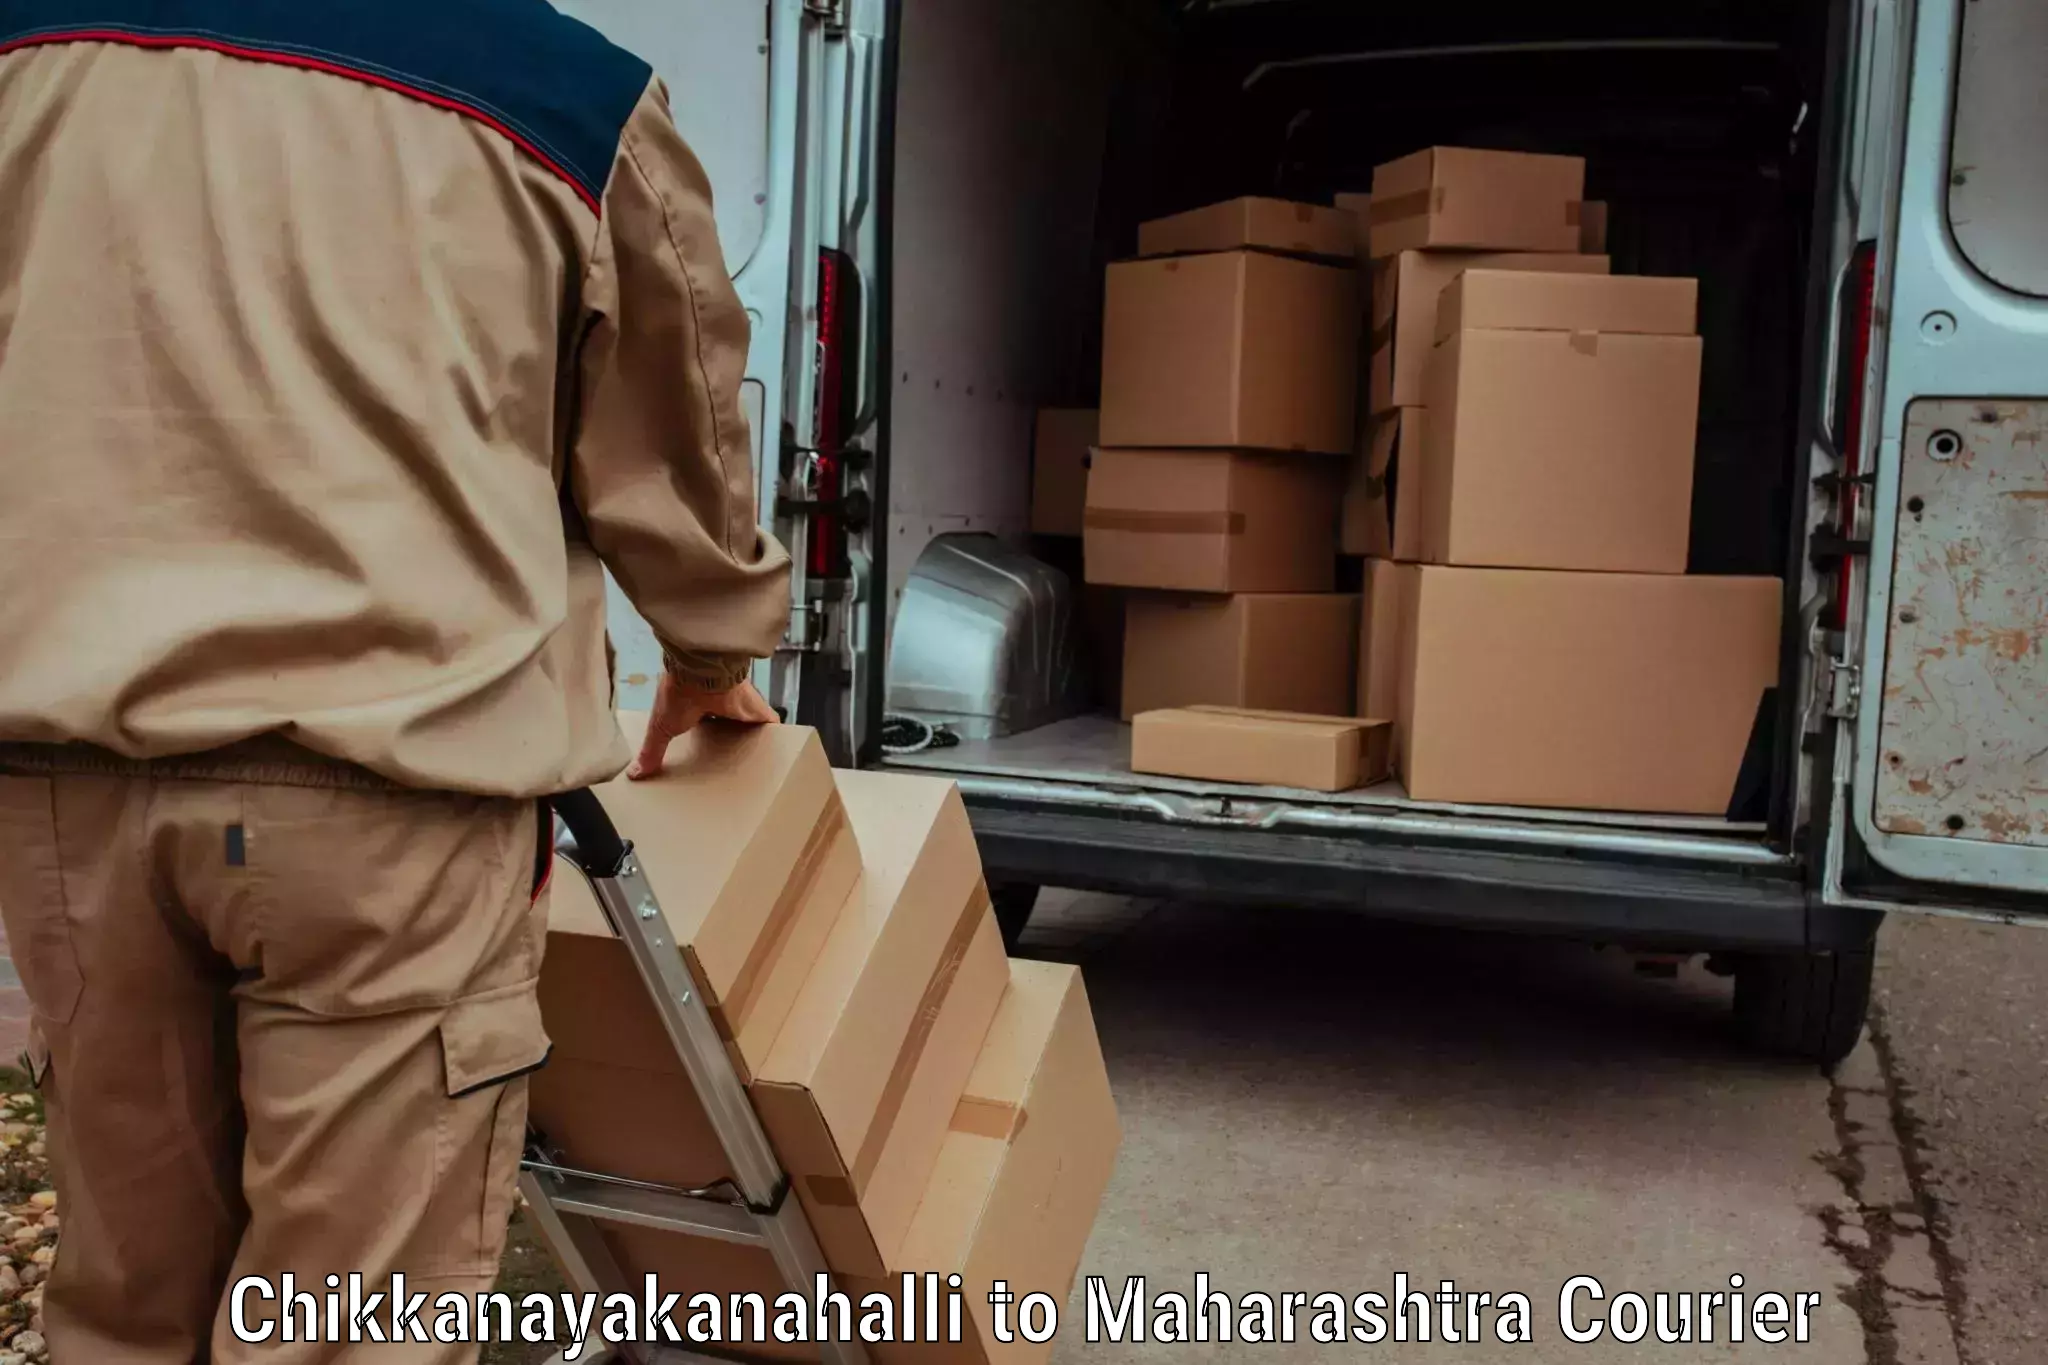 Reliable shipping partners Chikkanayakanahalli to Sangameshwar